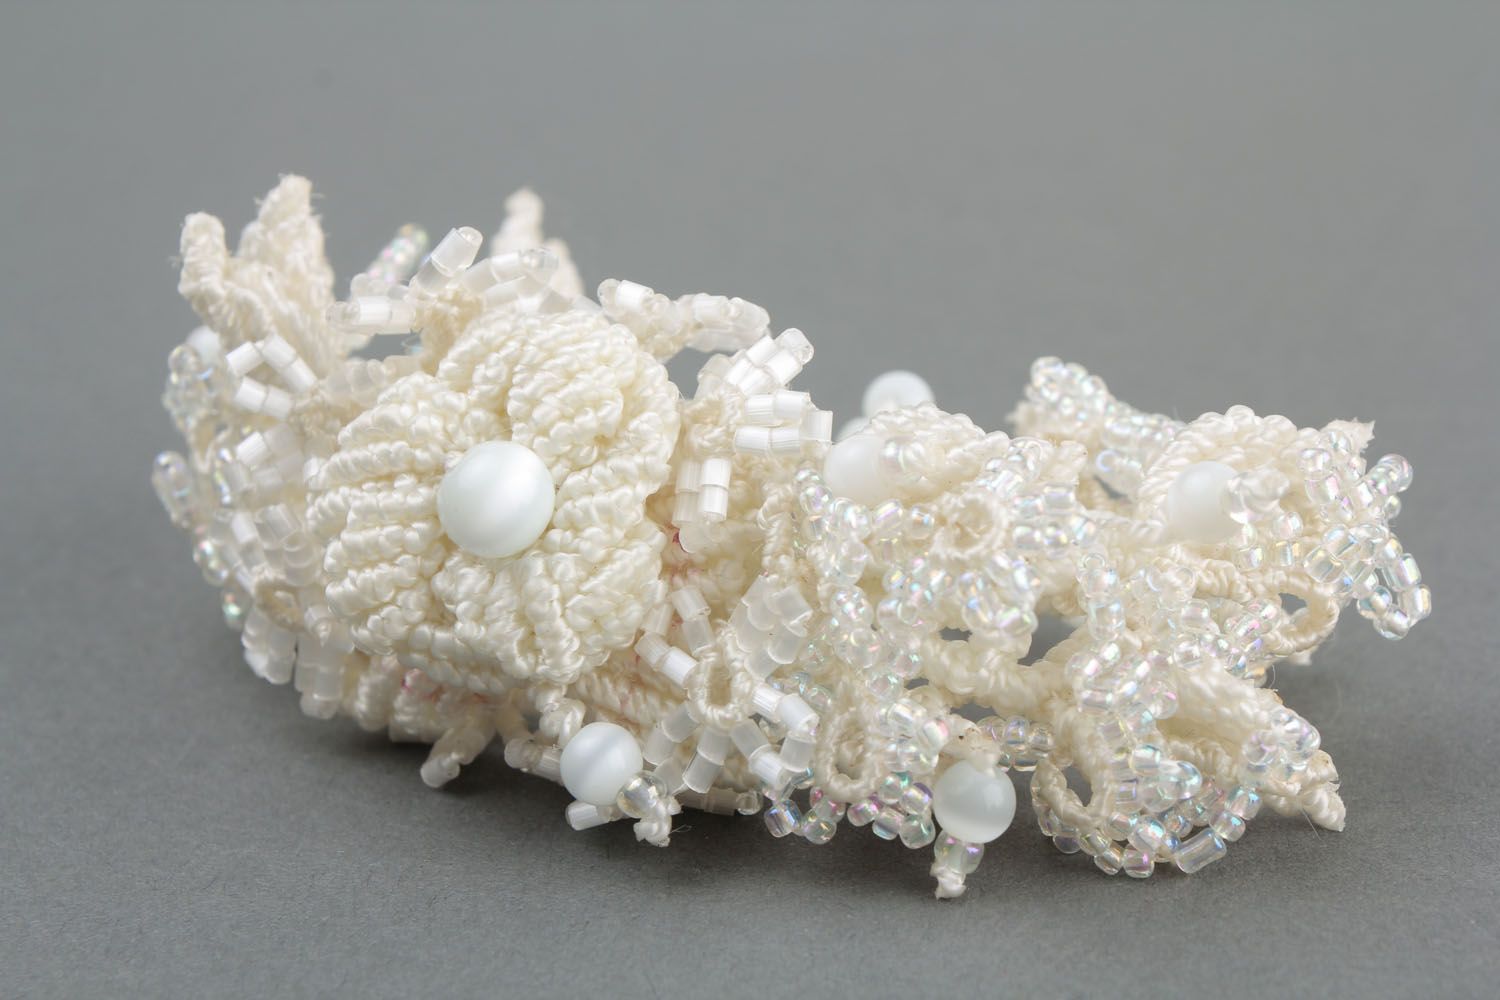 Snow-white macrame bracelet photo 4